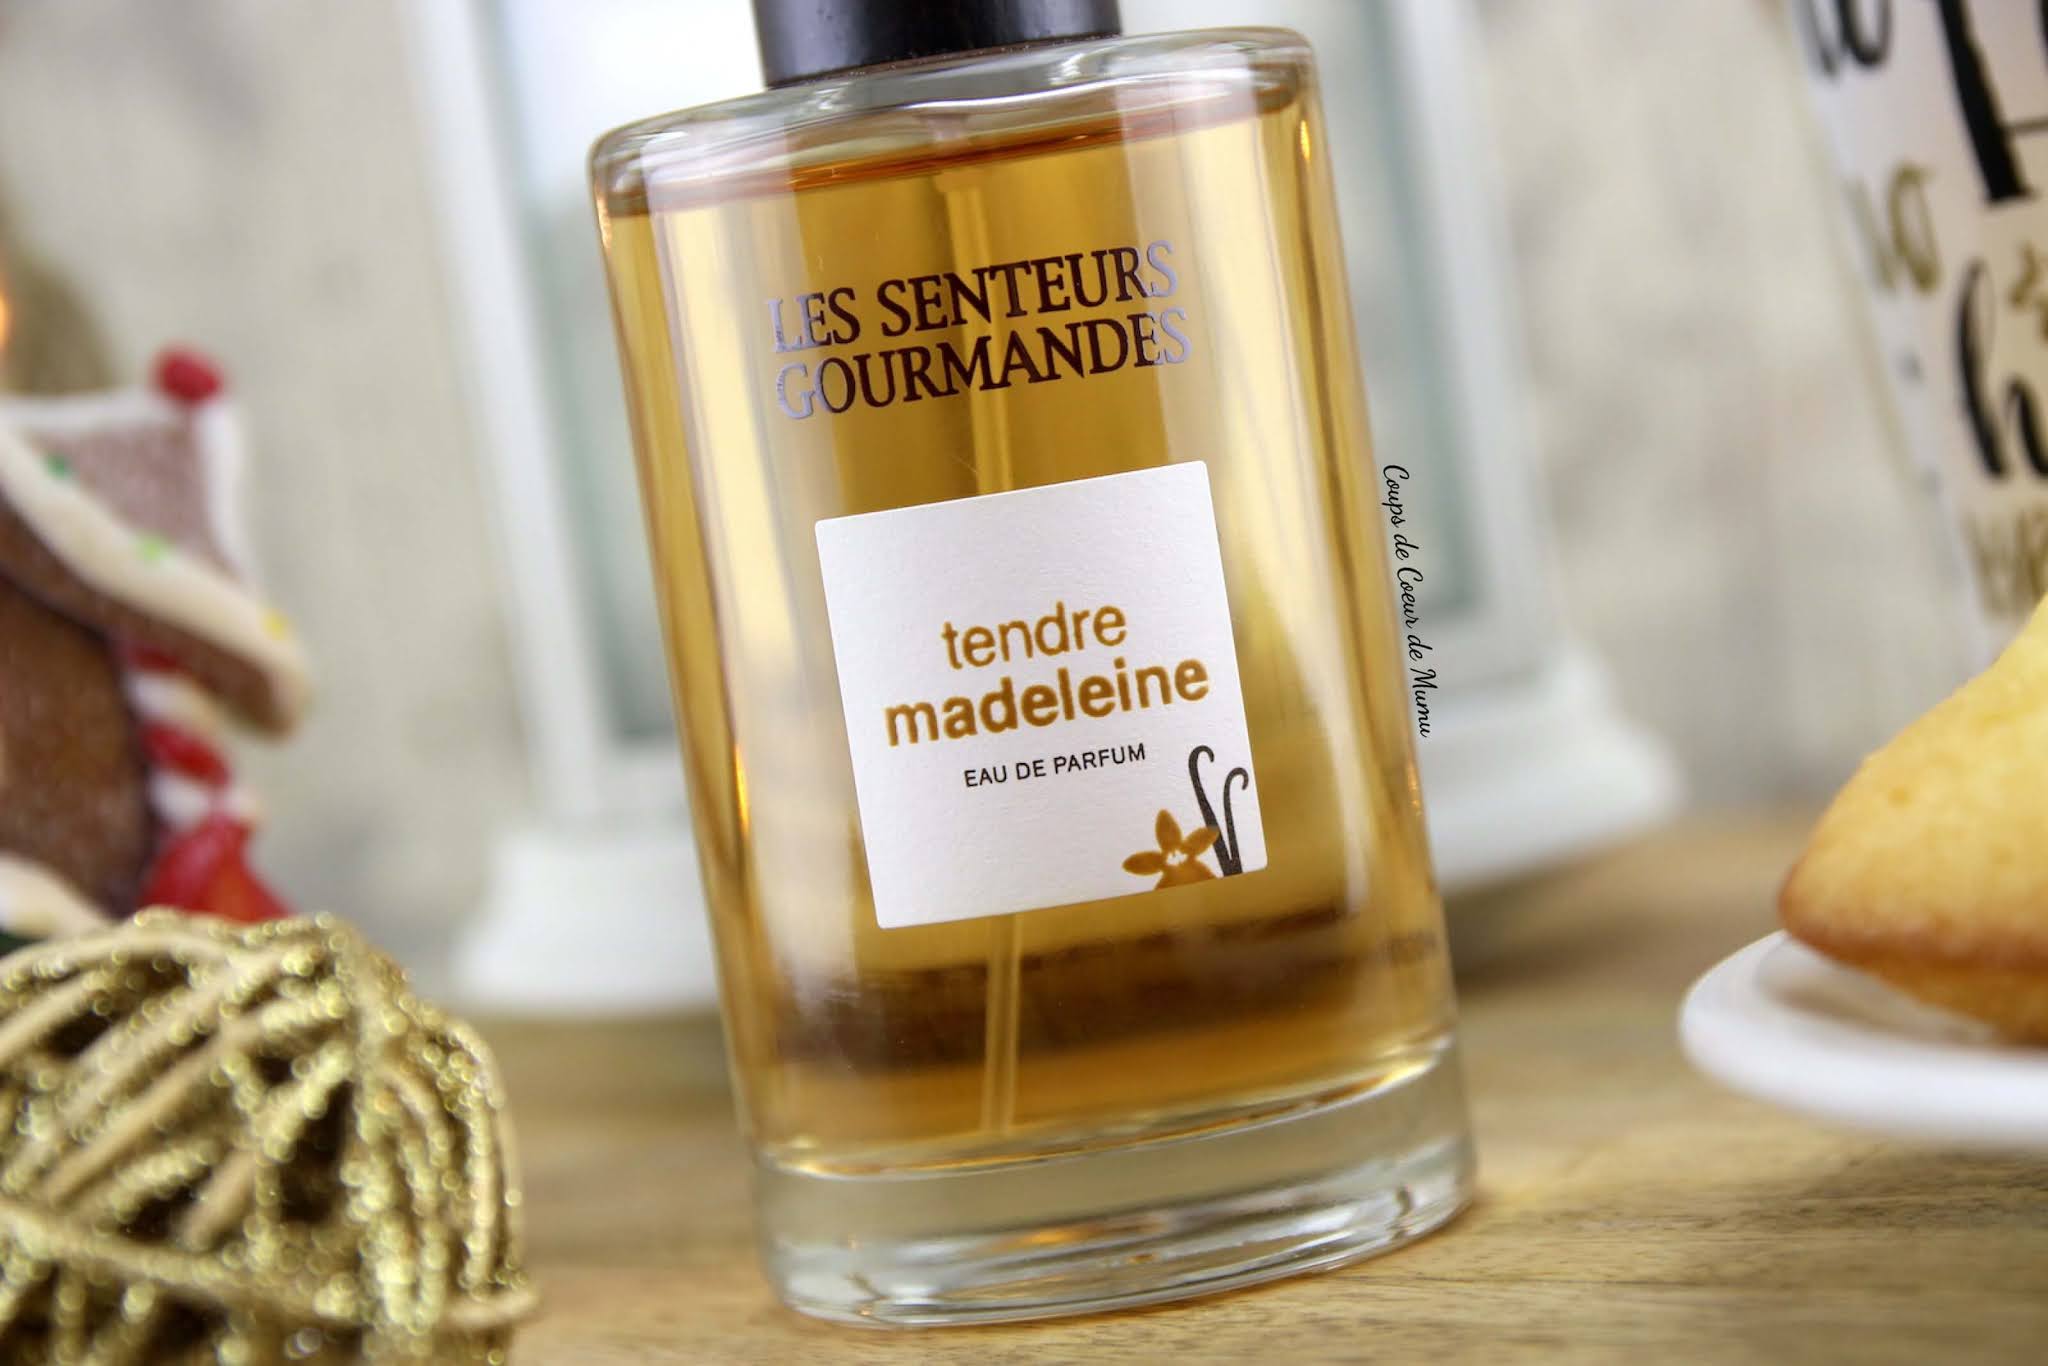 Tendre Madeleine Eau de Parfum 3.4oz From Les Senteurs Gourmandes